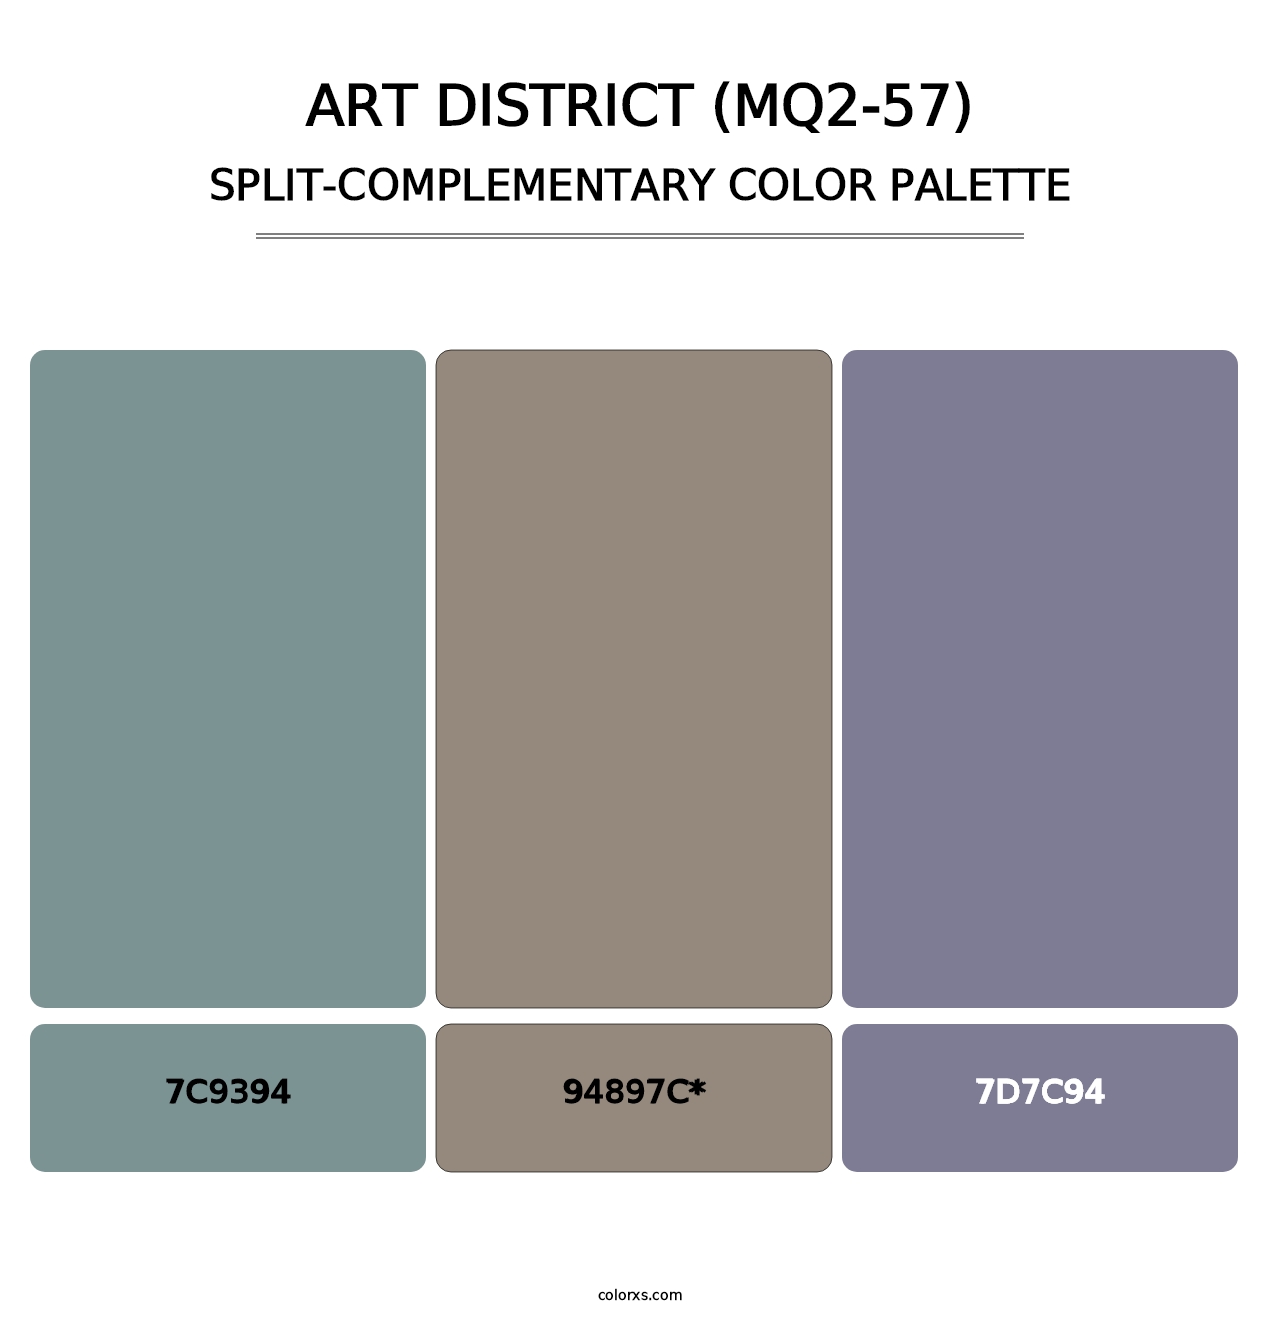 Art District (MQ2-57) - Split-Complementary Color Palette